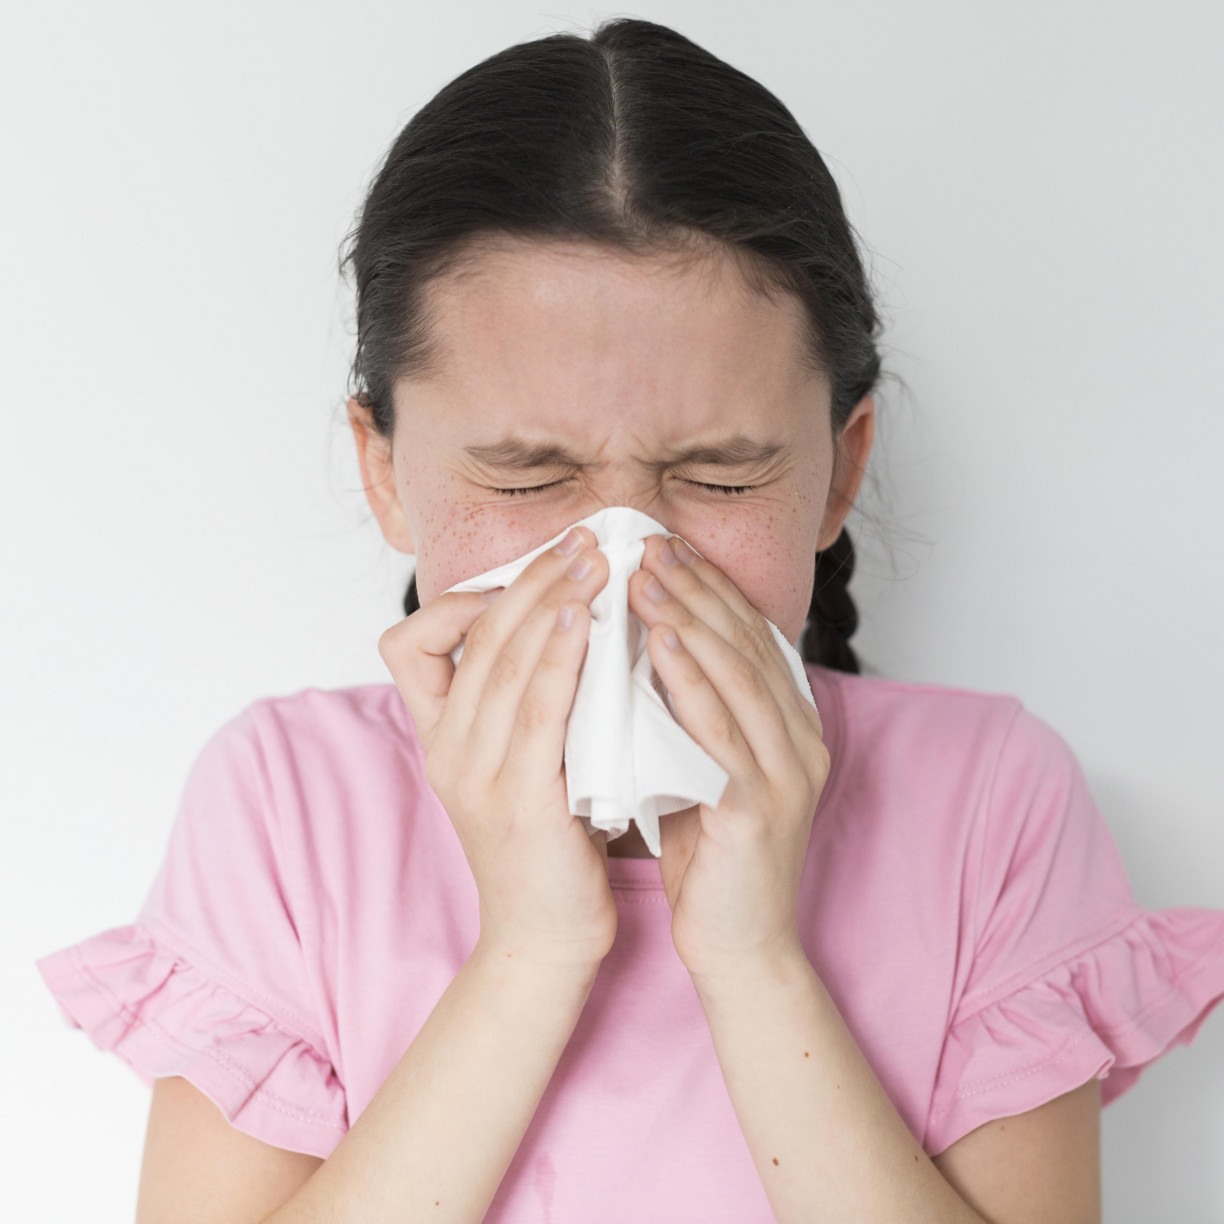 Os primeiros sinais da infecção causada pelo rinovírus costumam ser coceira no nariz ou irritação na garganta, que são seguidos após algumas horas por espirros e secreções nasais